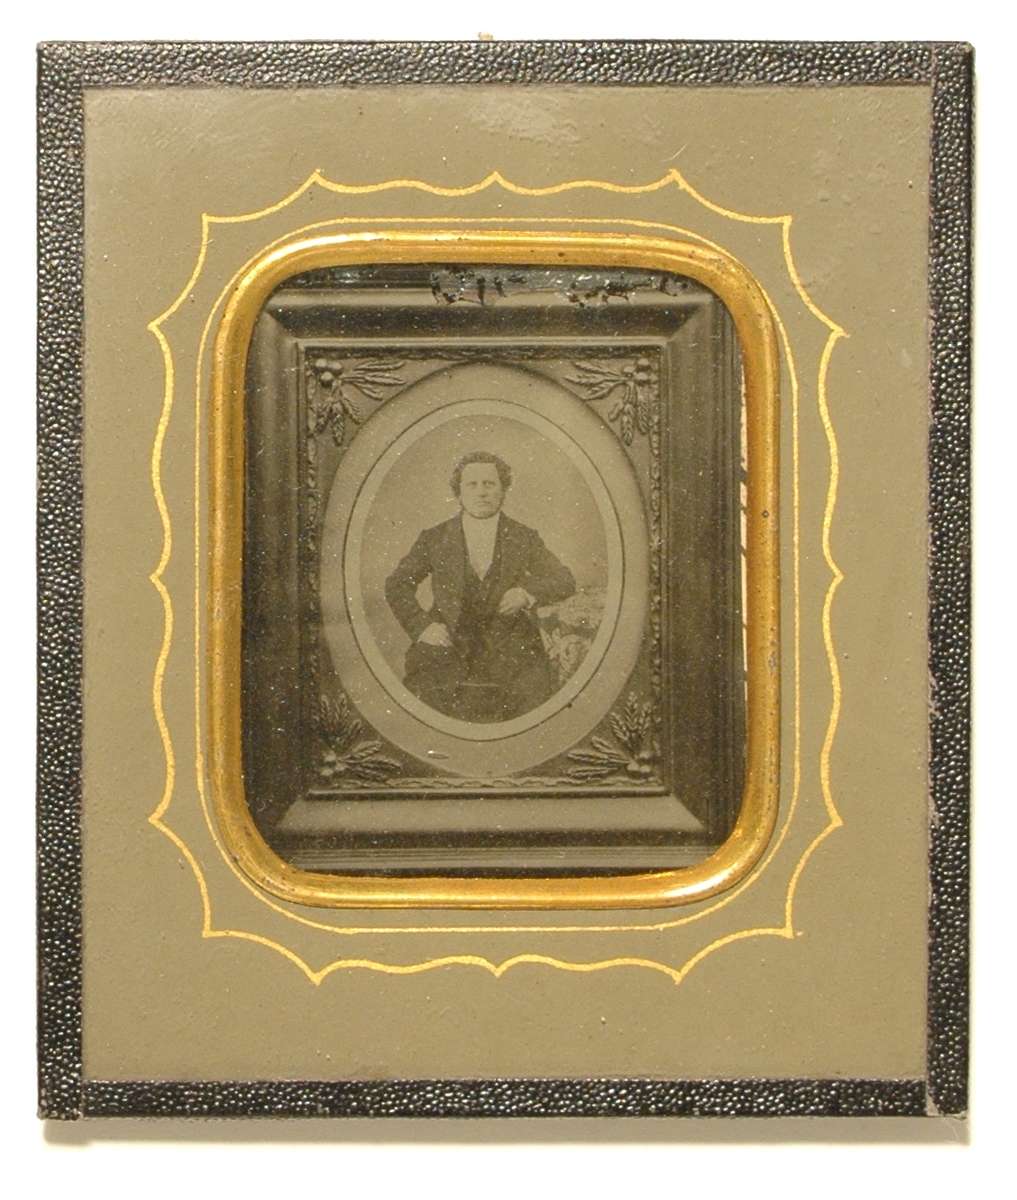 Ambrotyp monterad med klotkant bakom glas; förgylld kant runt fotografiet och guldlinje på kartongen.

Föreställer ett inramat fotografi av en okänd man.